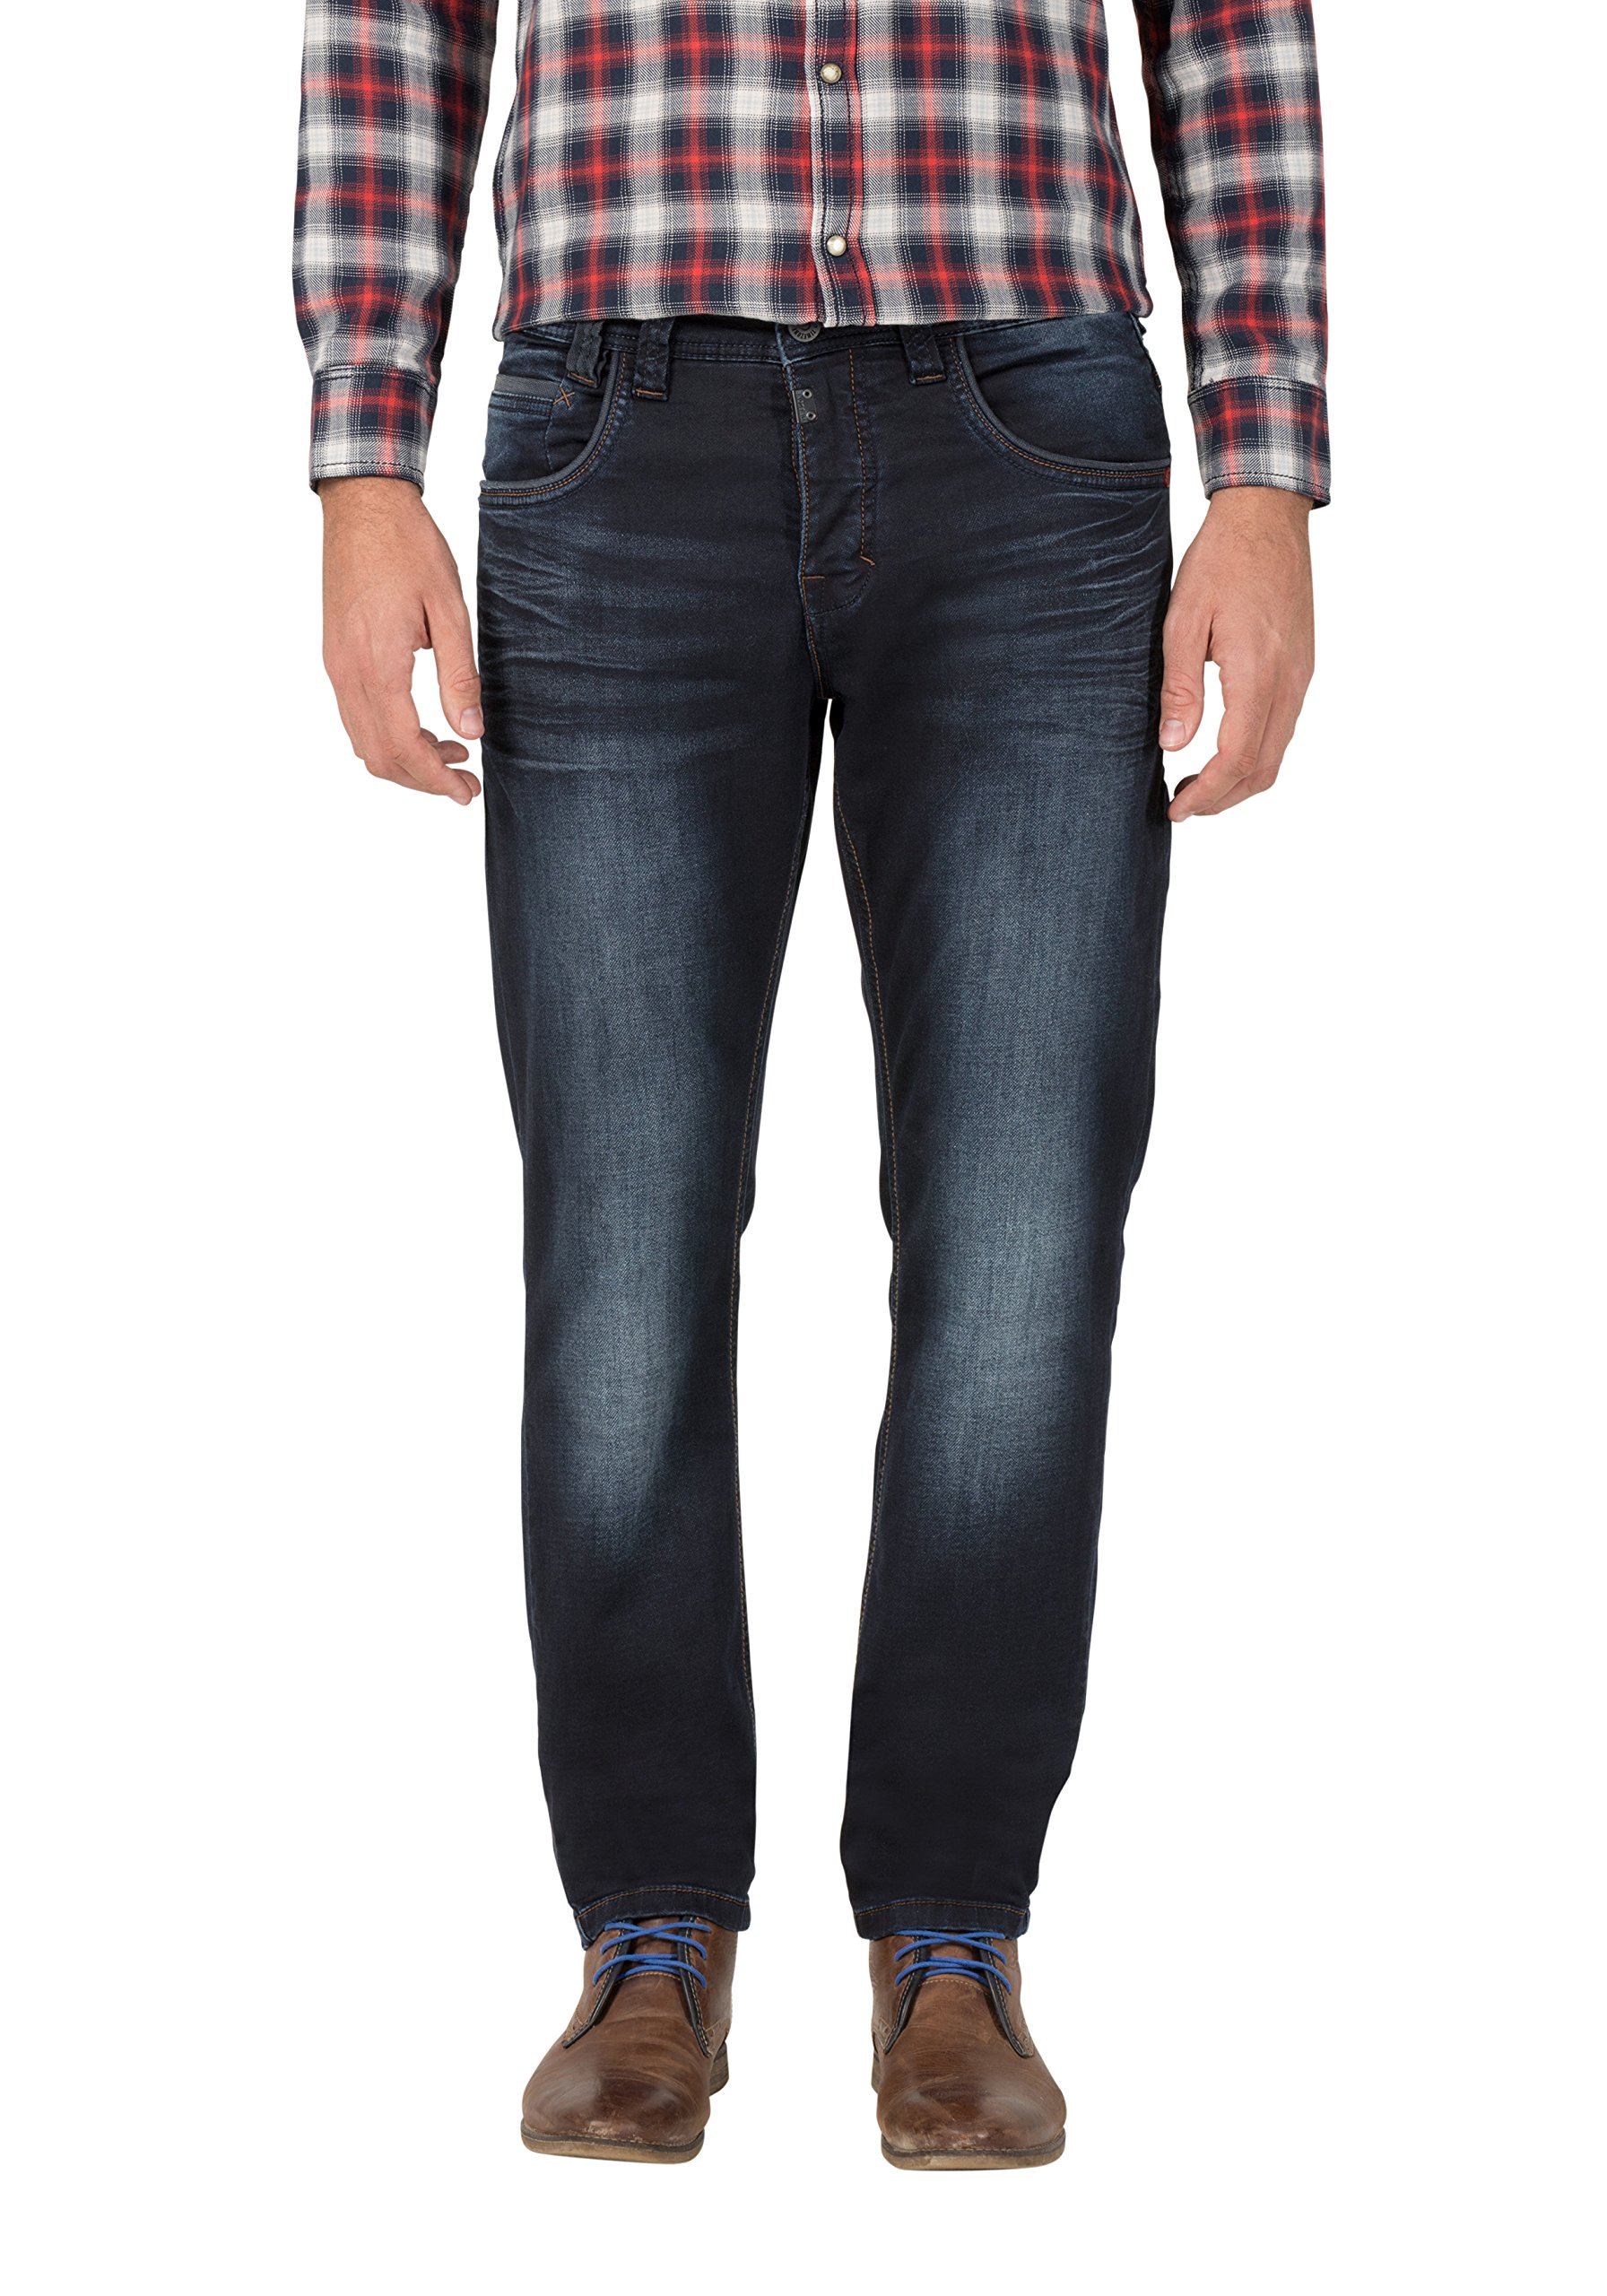 Timezone Herren Regular Gerrittz Straight Jeans, Blau (Indigo Rough Wash 3200), 38W / 30L EU